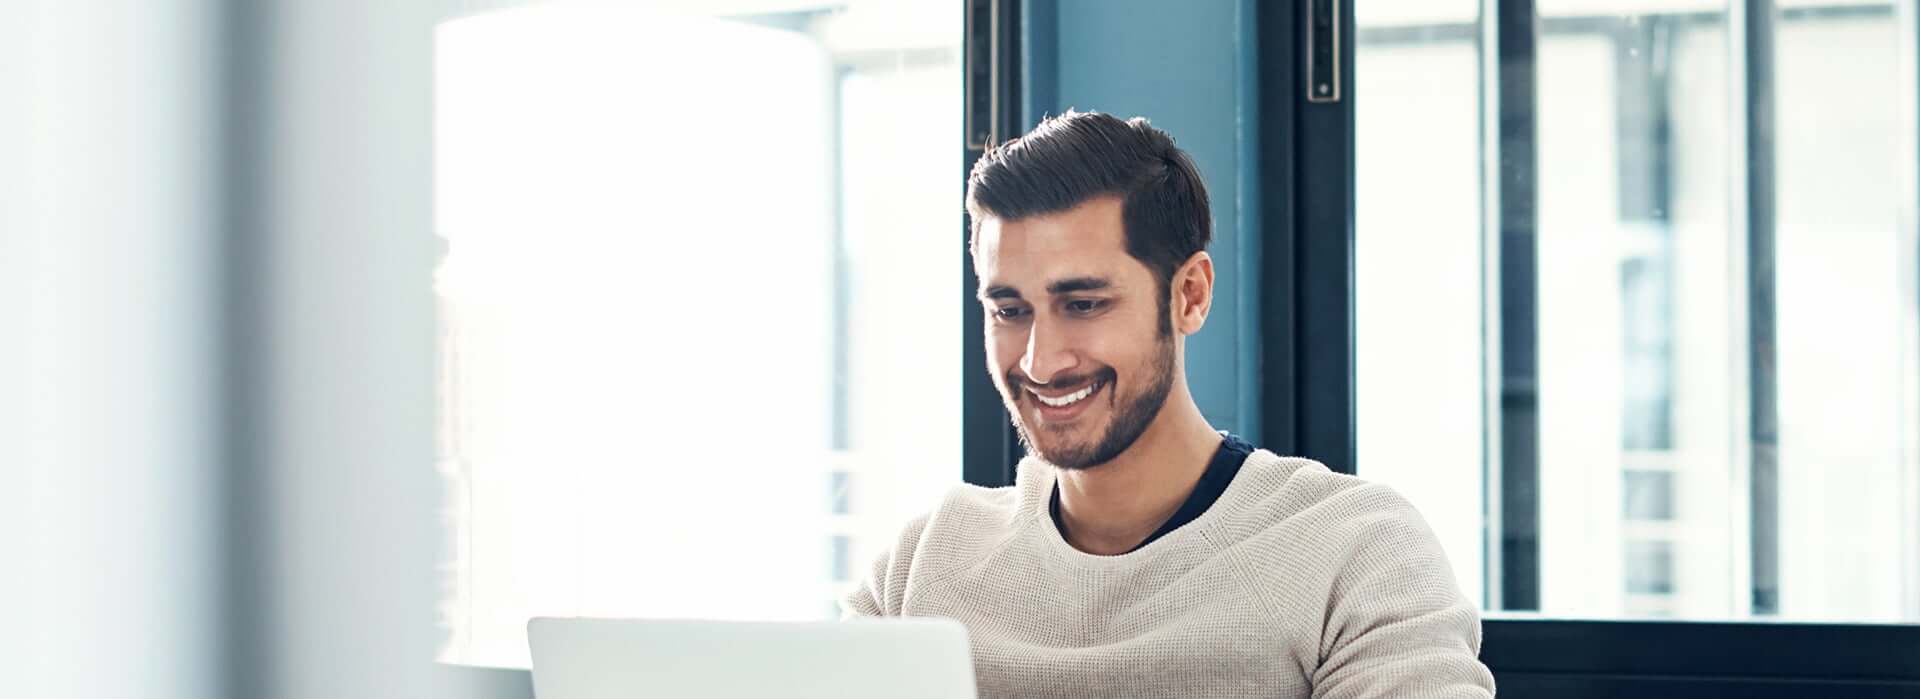 smiling man looking at his laptop